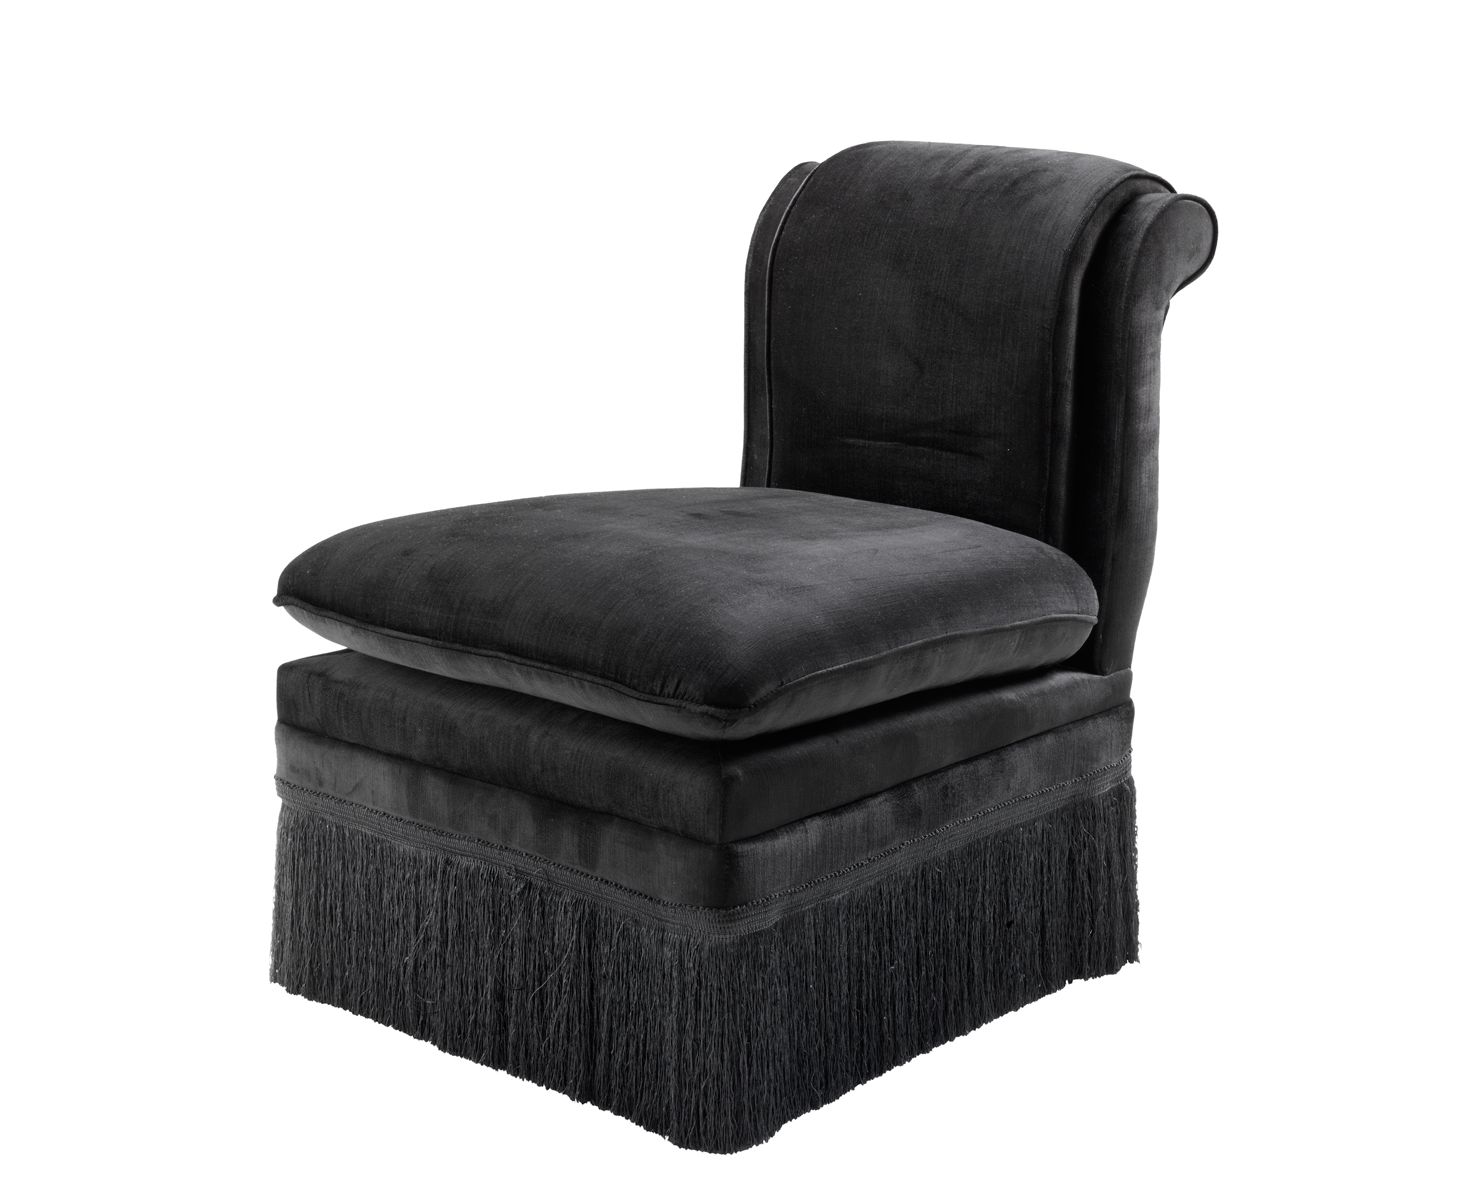 Удлиненное кресло. Eichholtz черный. Кресло черное текстильное. Страна: Нидерланды бренд: Eichholtz.